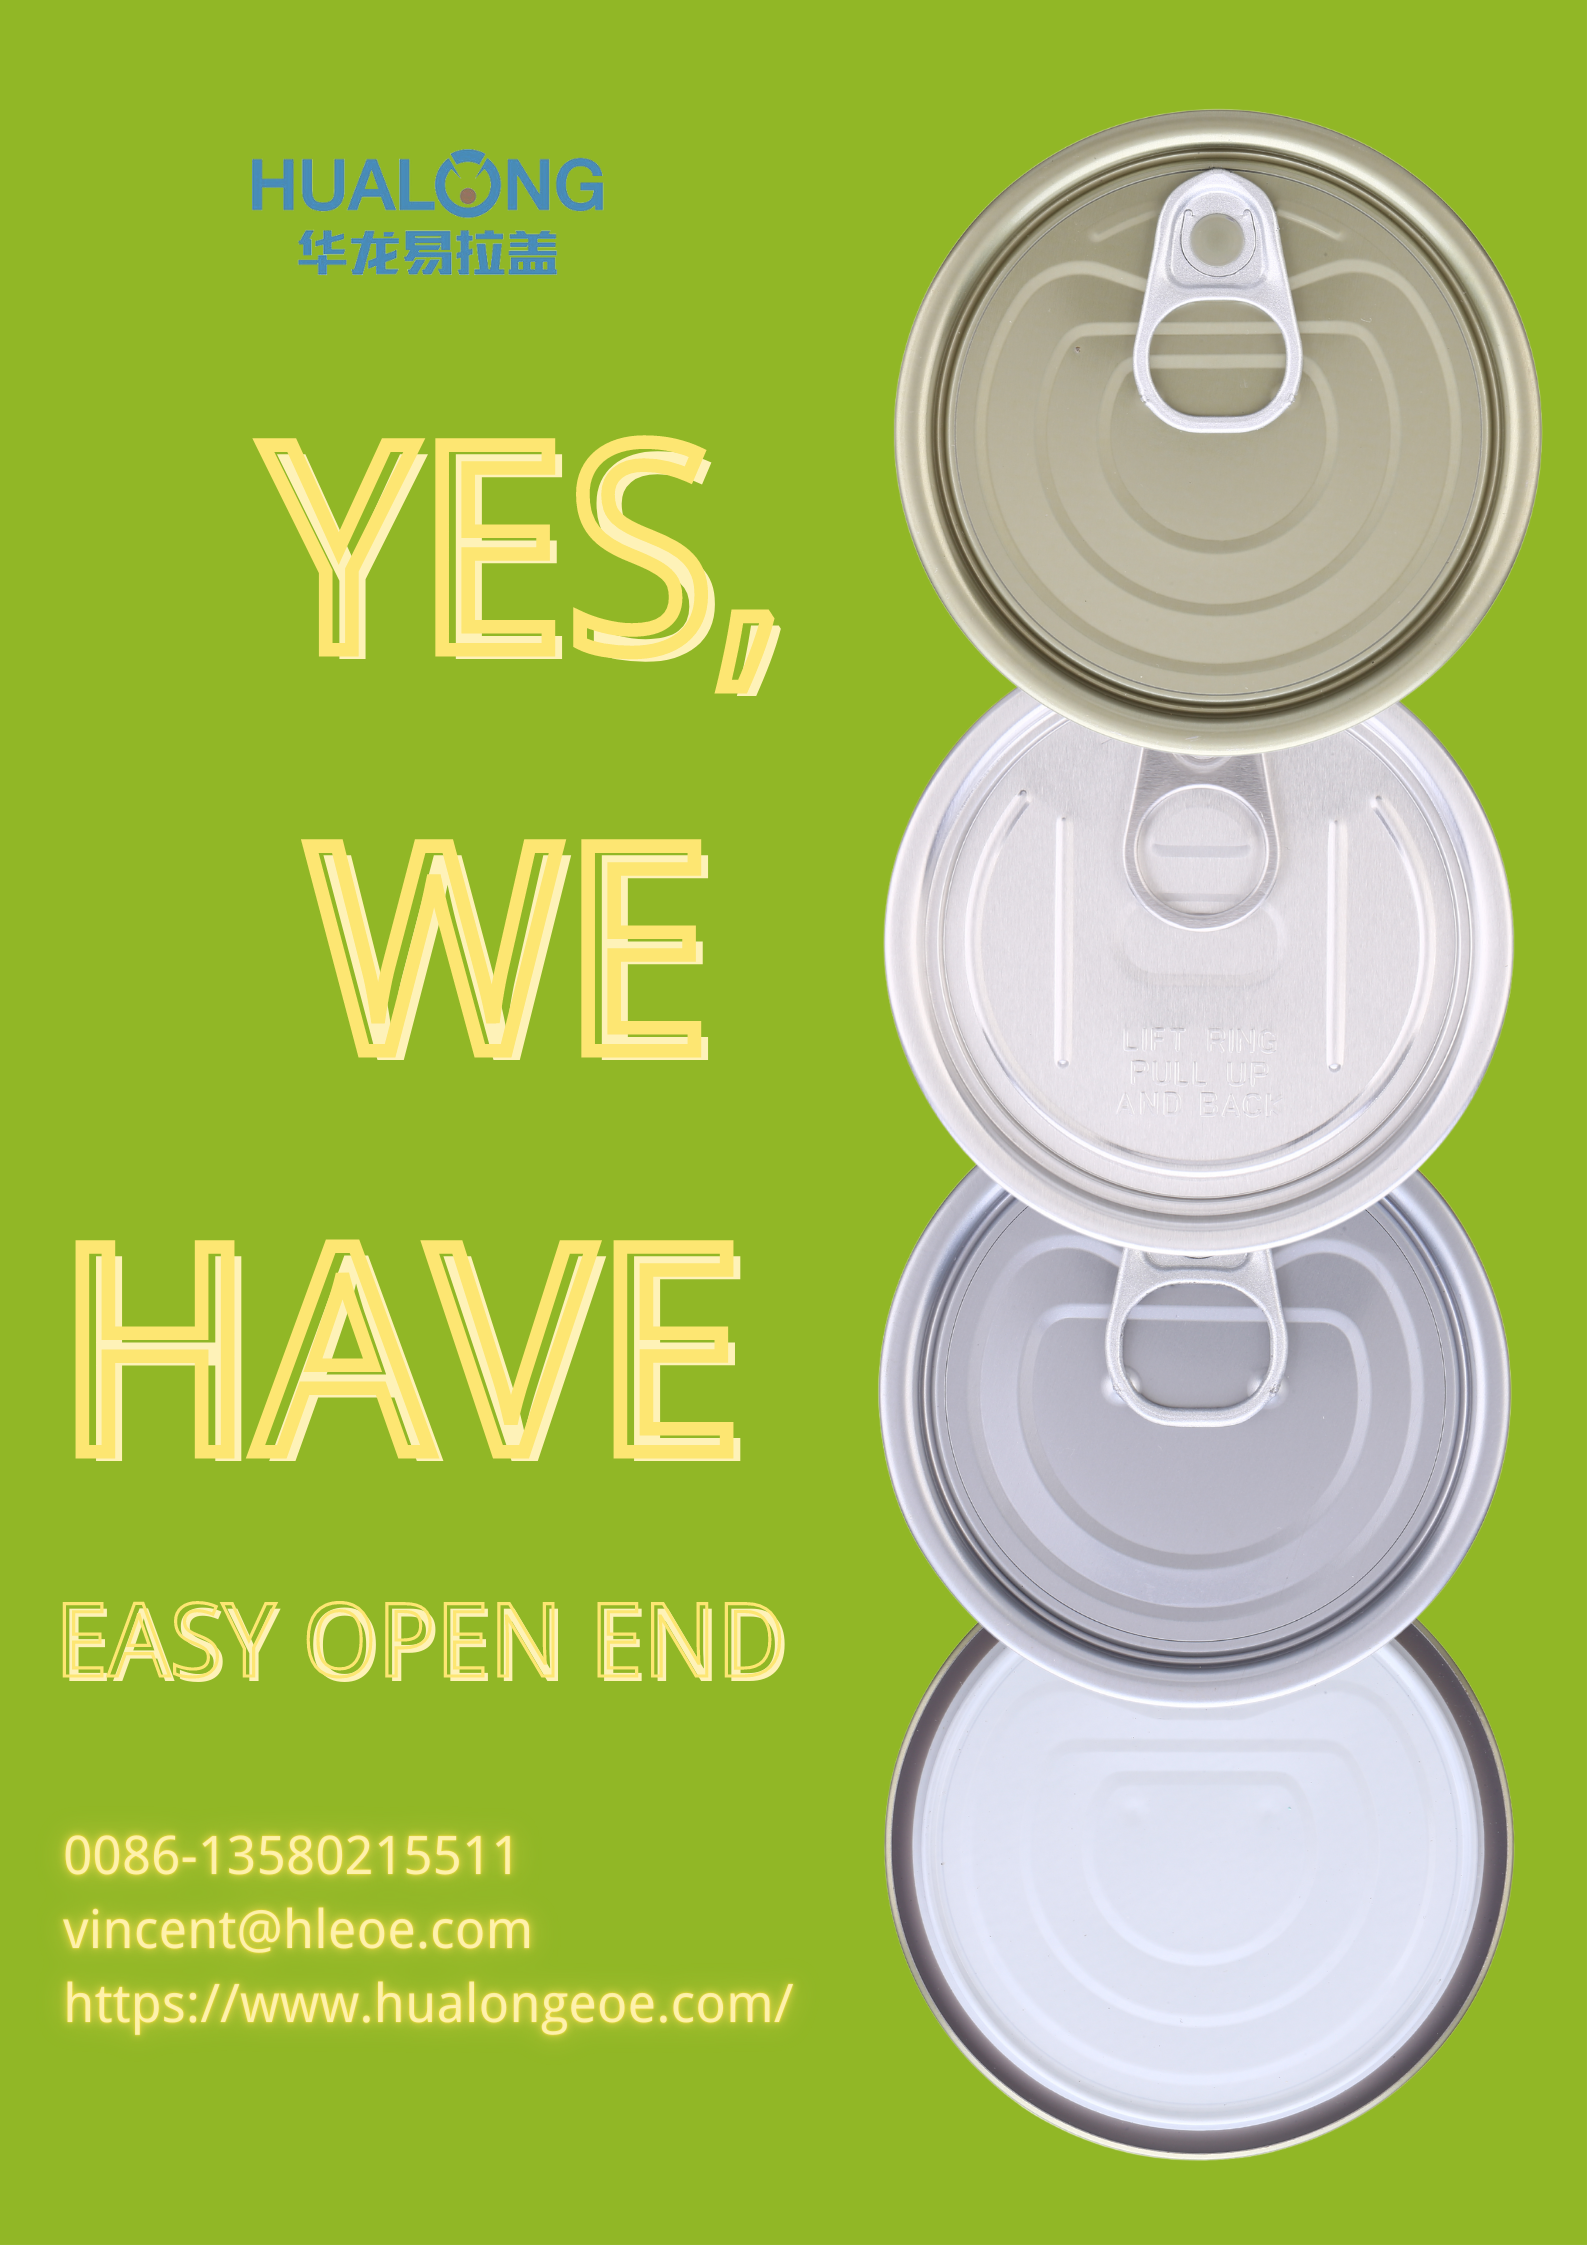 Hualong Easy Open End. Մենք ունենք Ձեզ անհրաժեշտ բոլոր չափերը